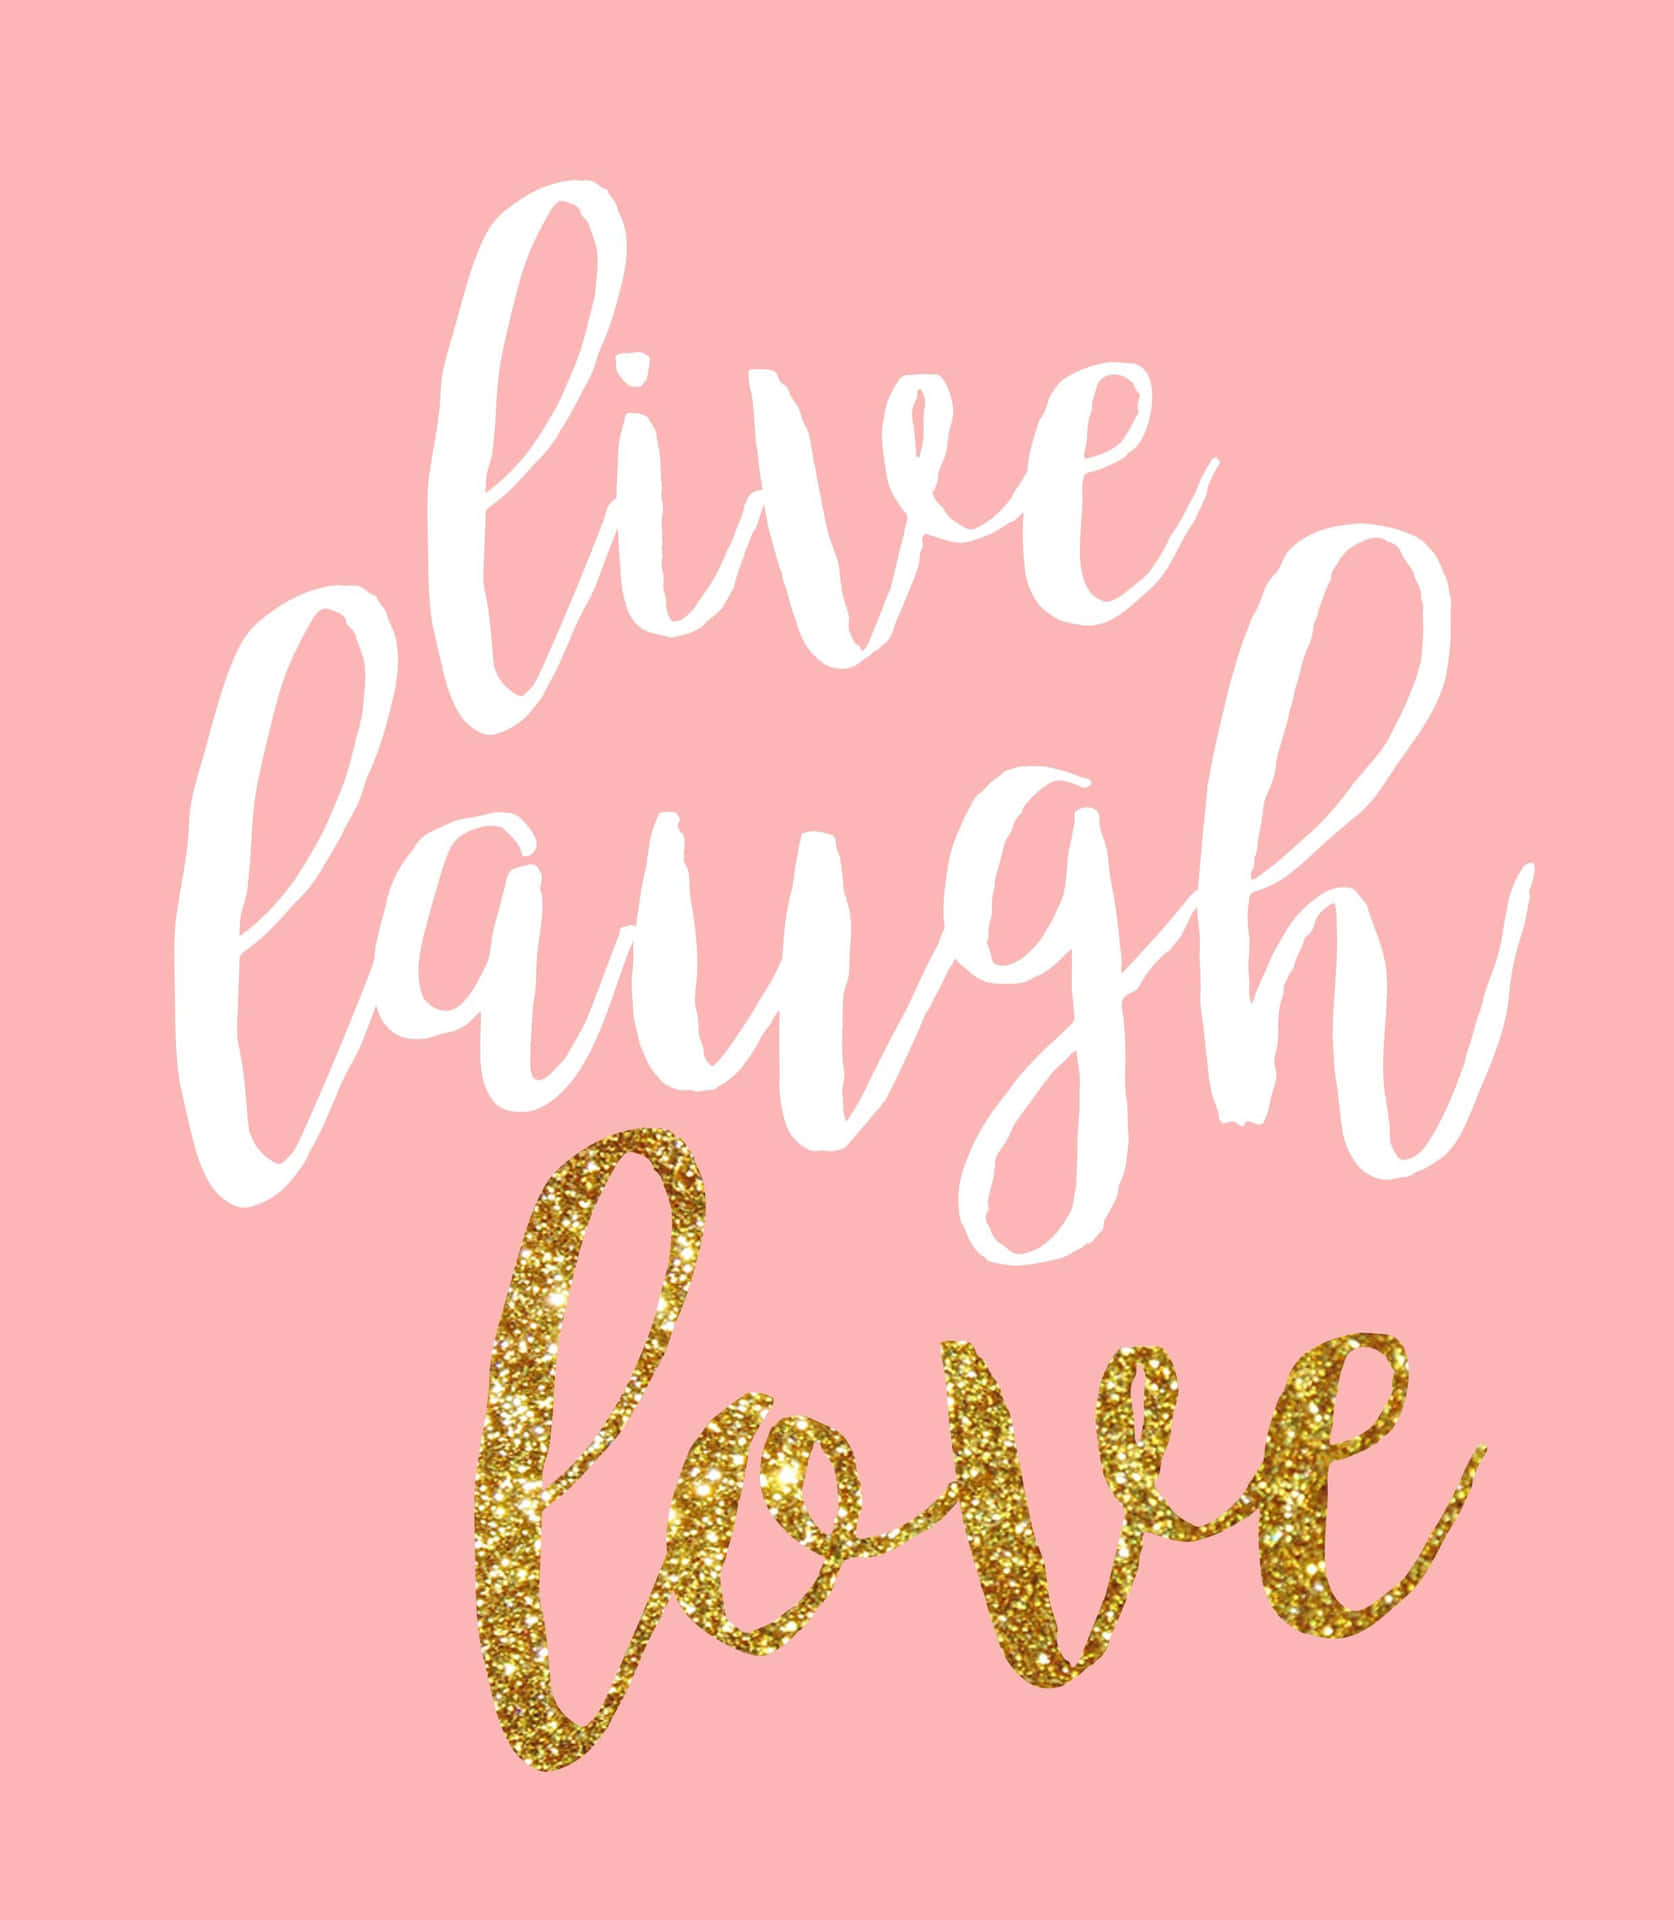 Glæde ved livet: Lev, grine, elsk. Wallpaper